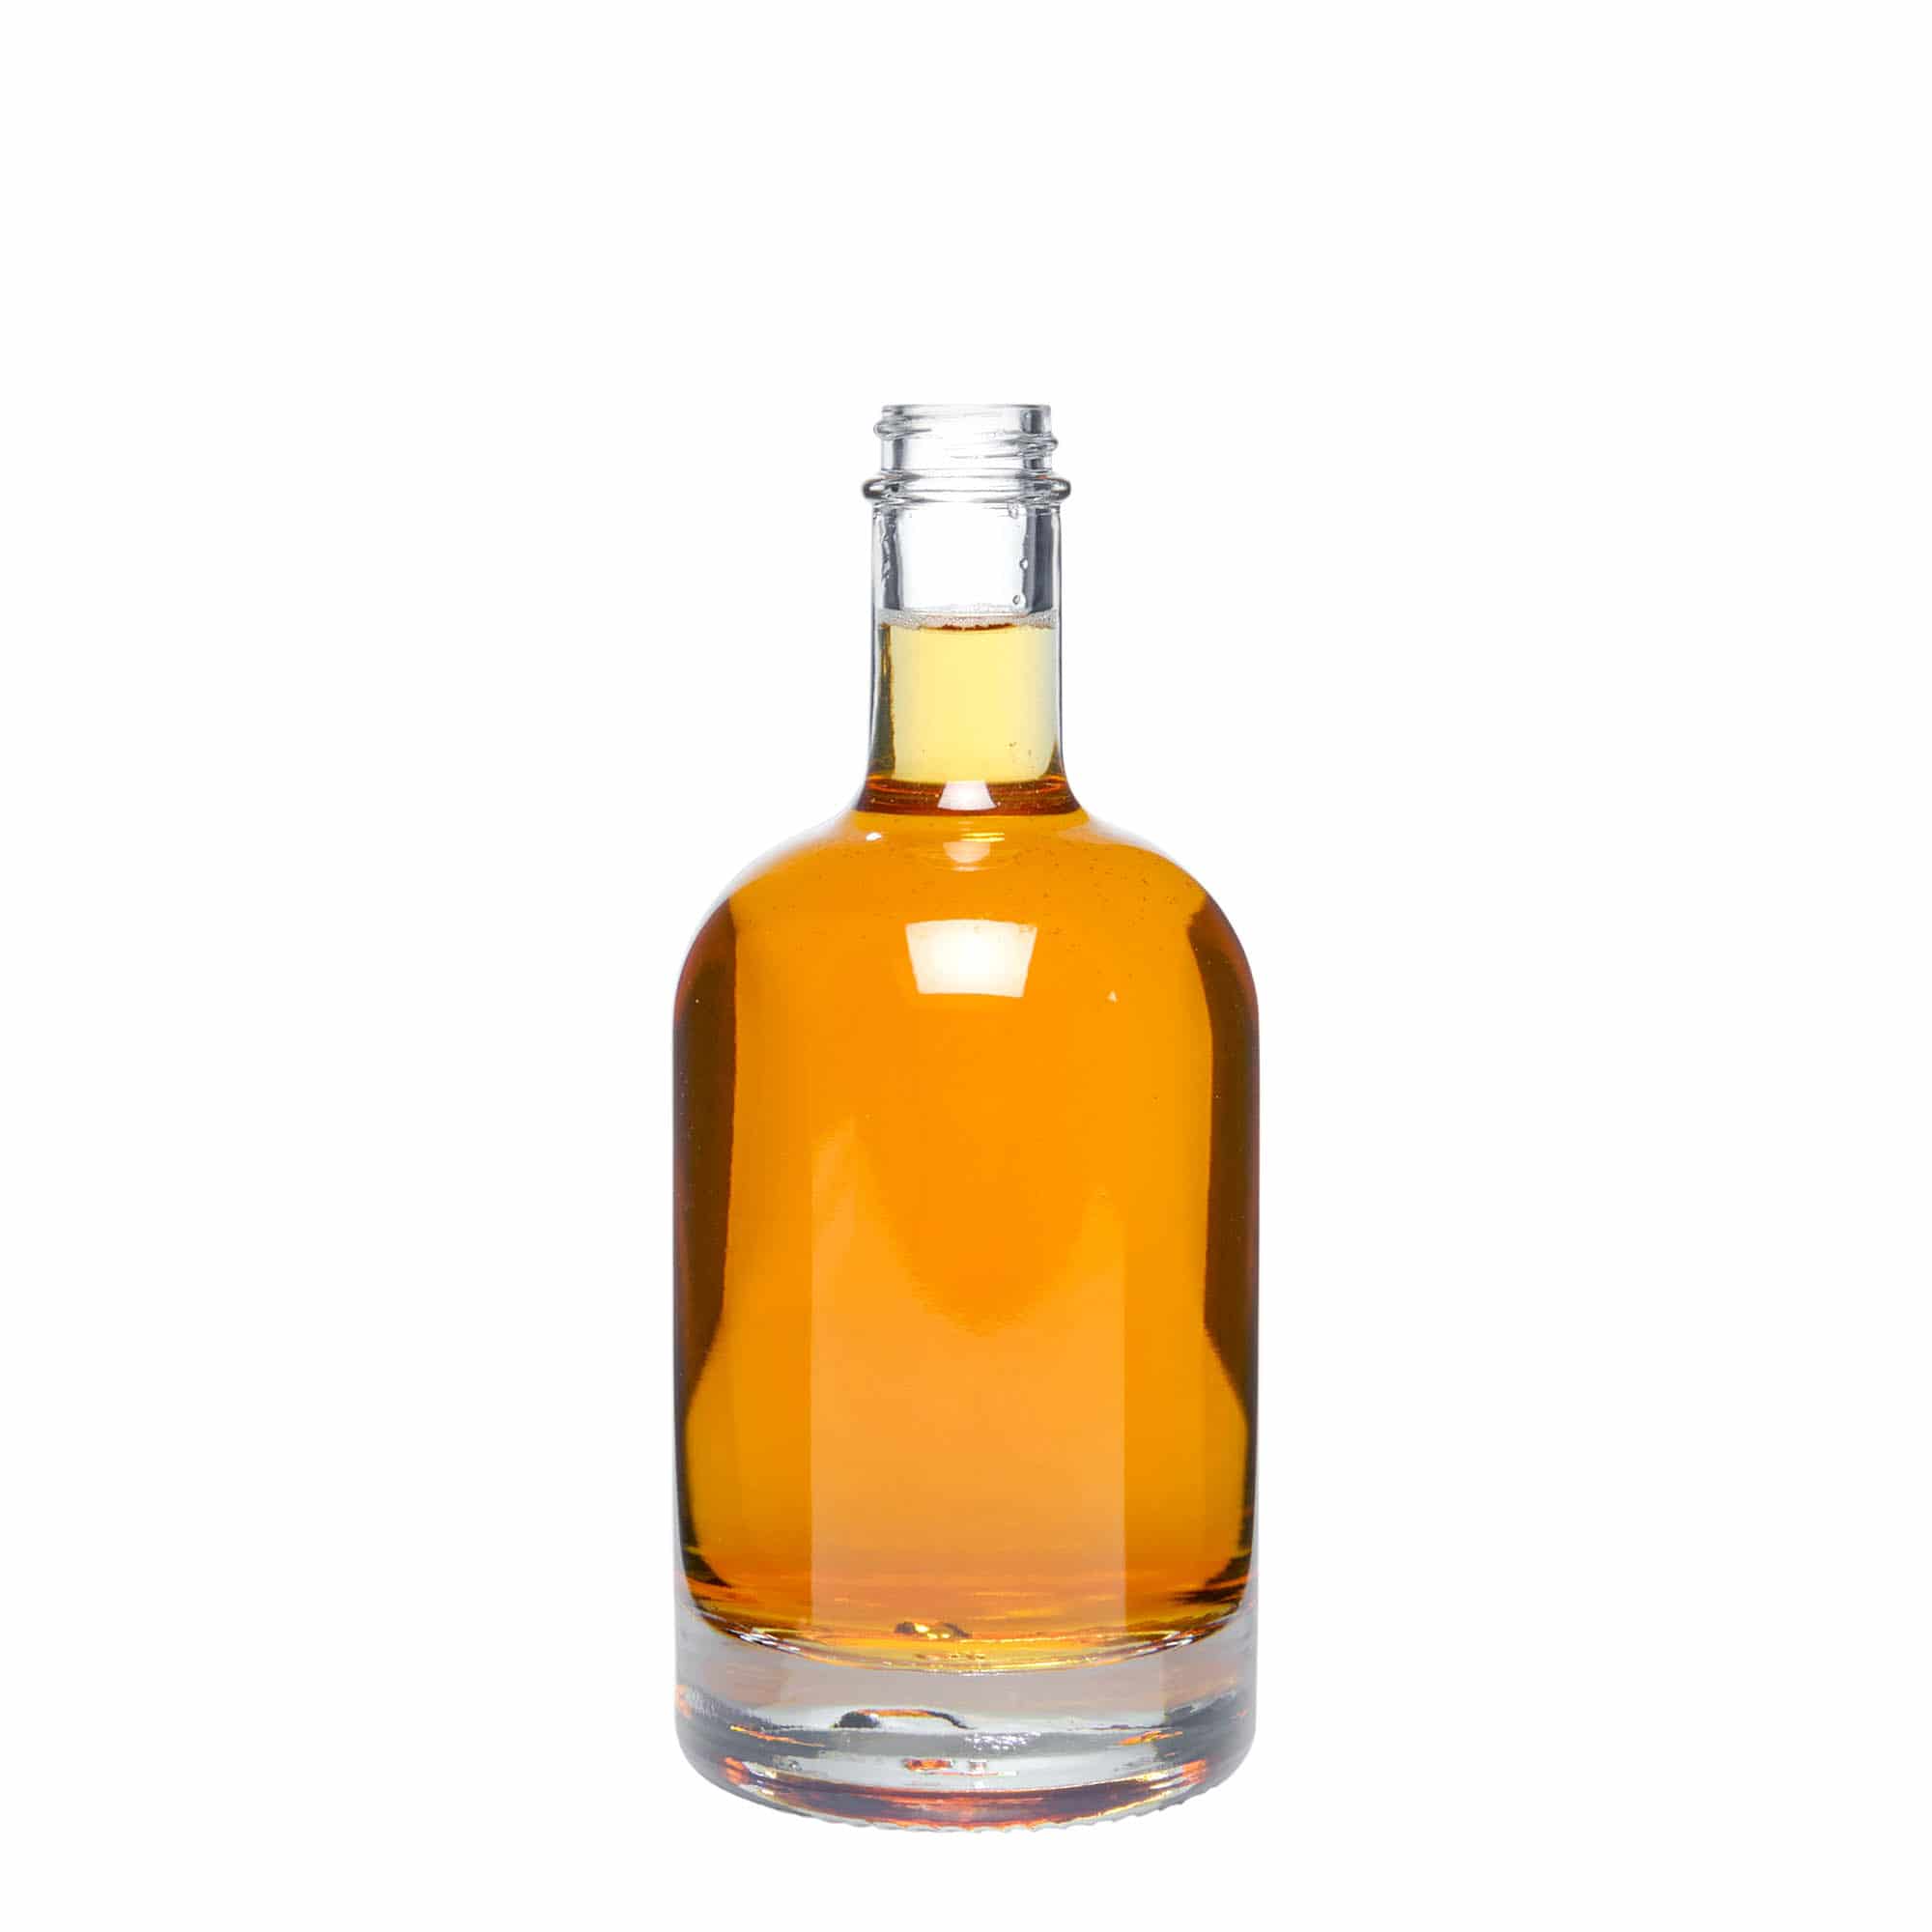 Glazen fles 'First Class', 500 ml, monding: GPI 28